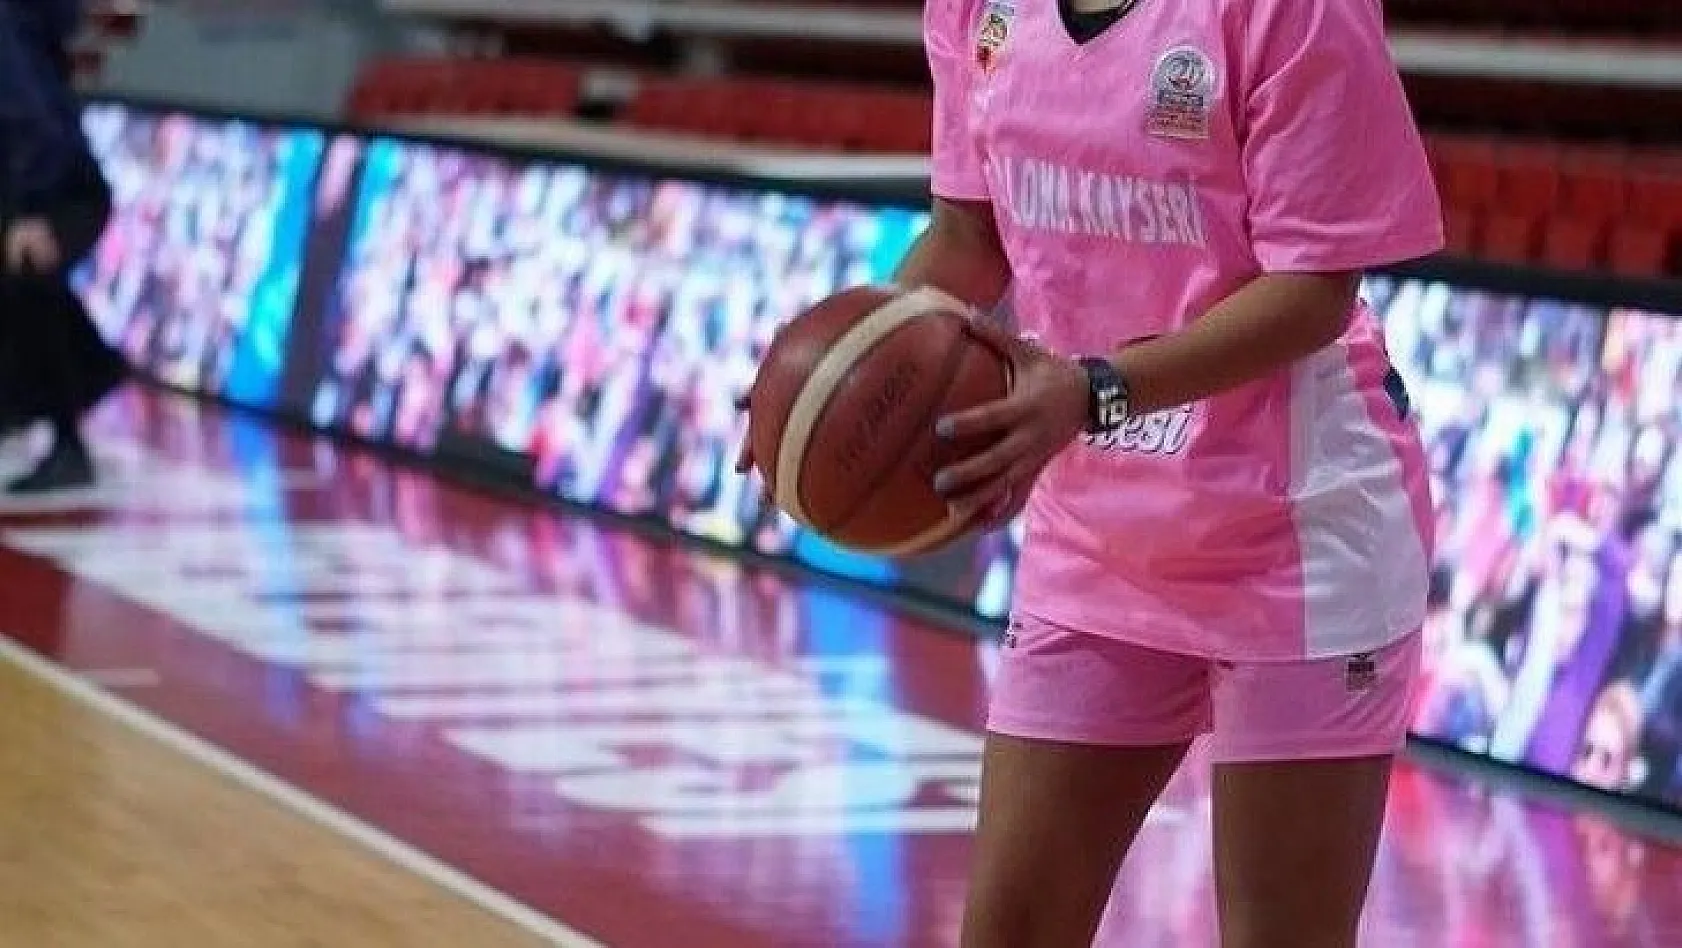 Bellona Kayseri Basketbol'da 4 oyuncu çift haneli sayılara ulaştı